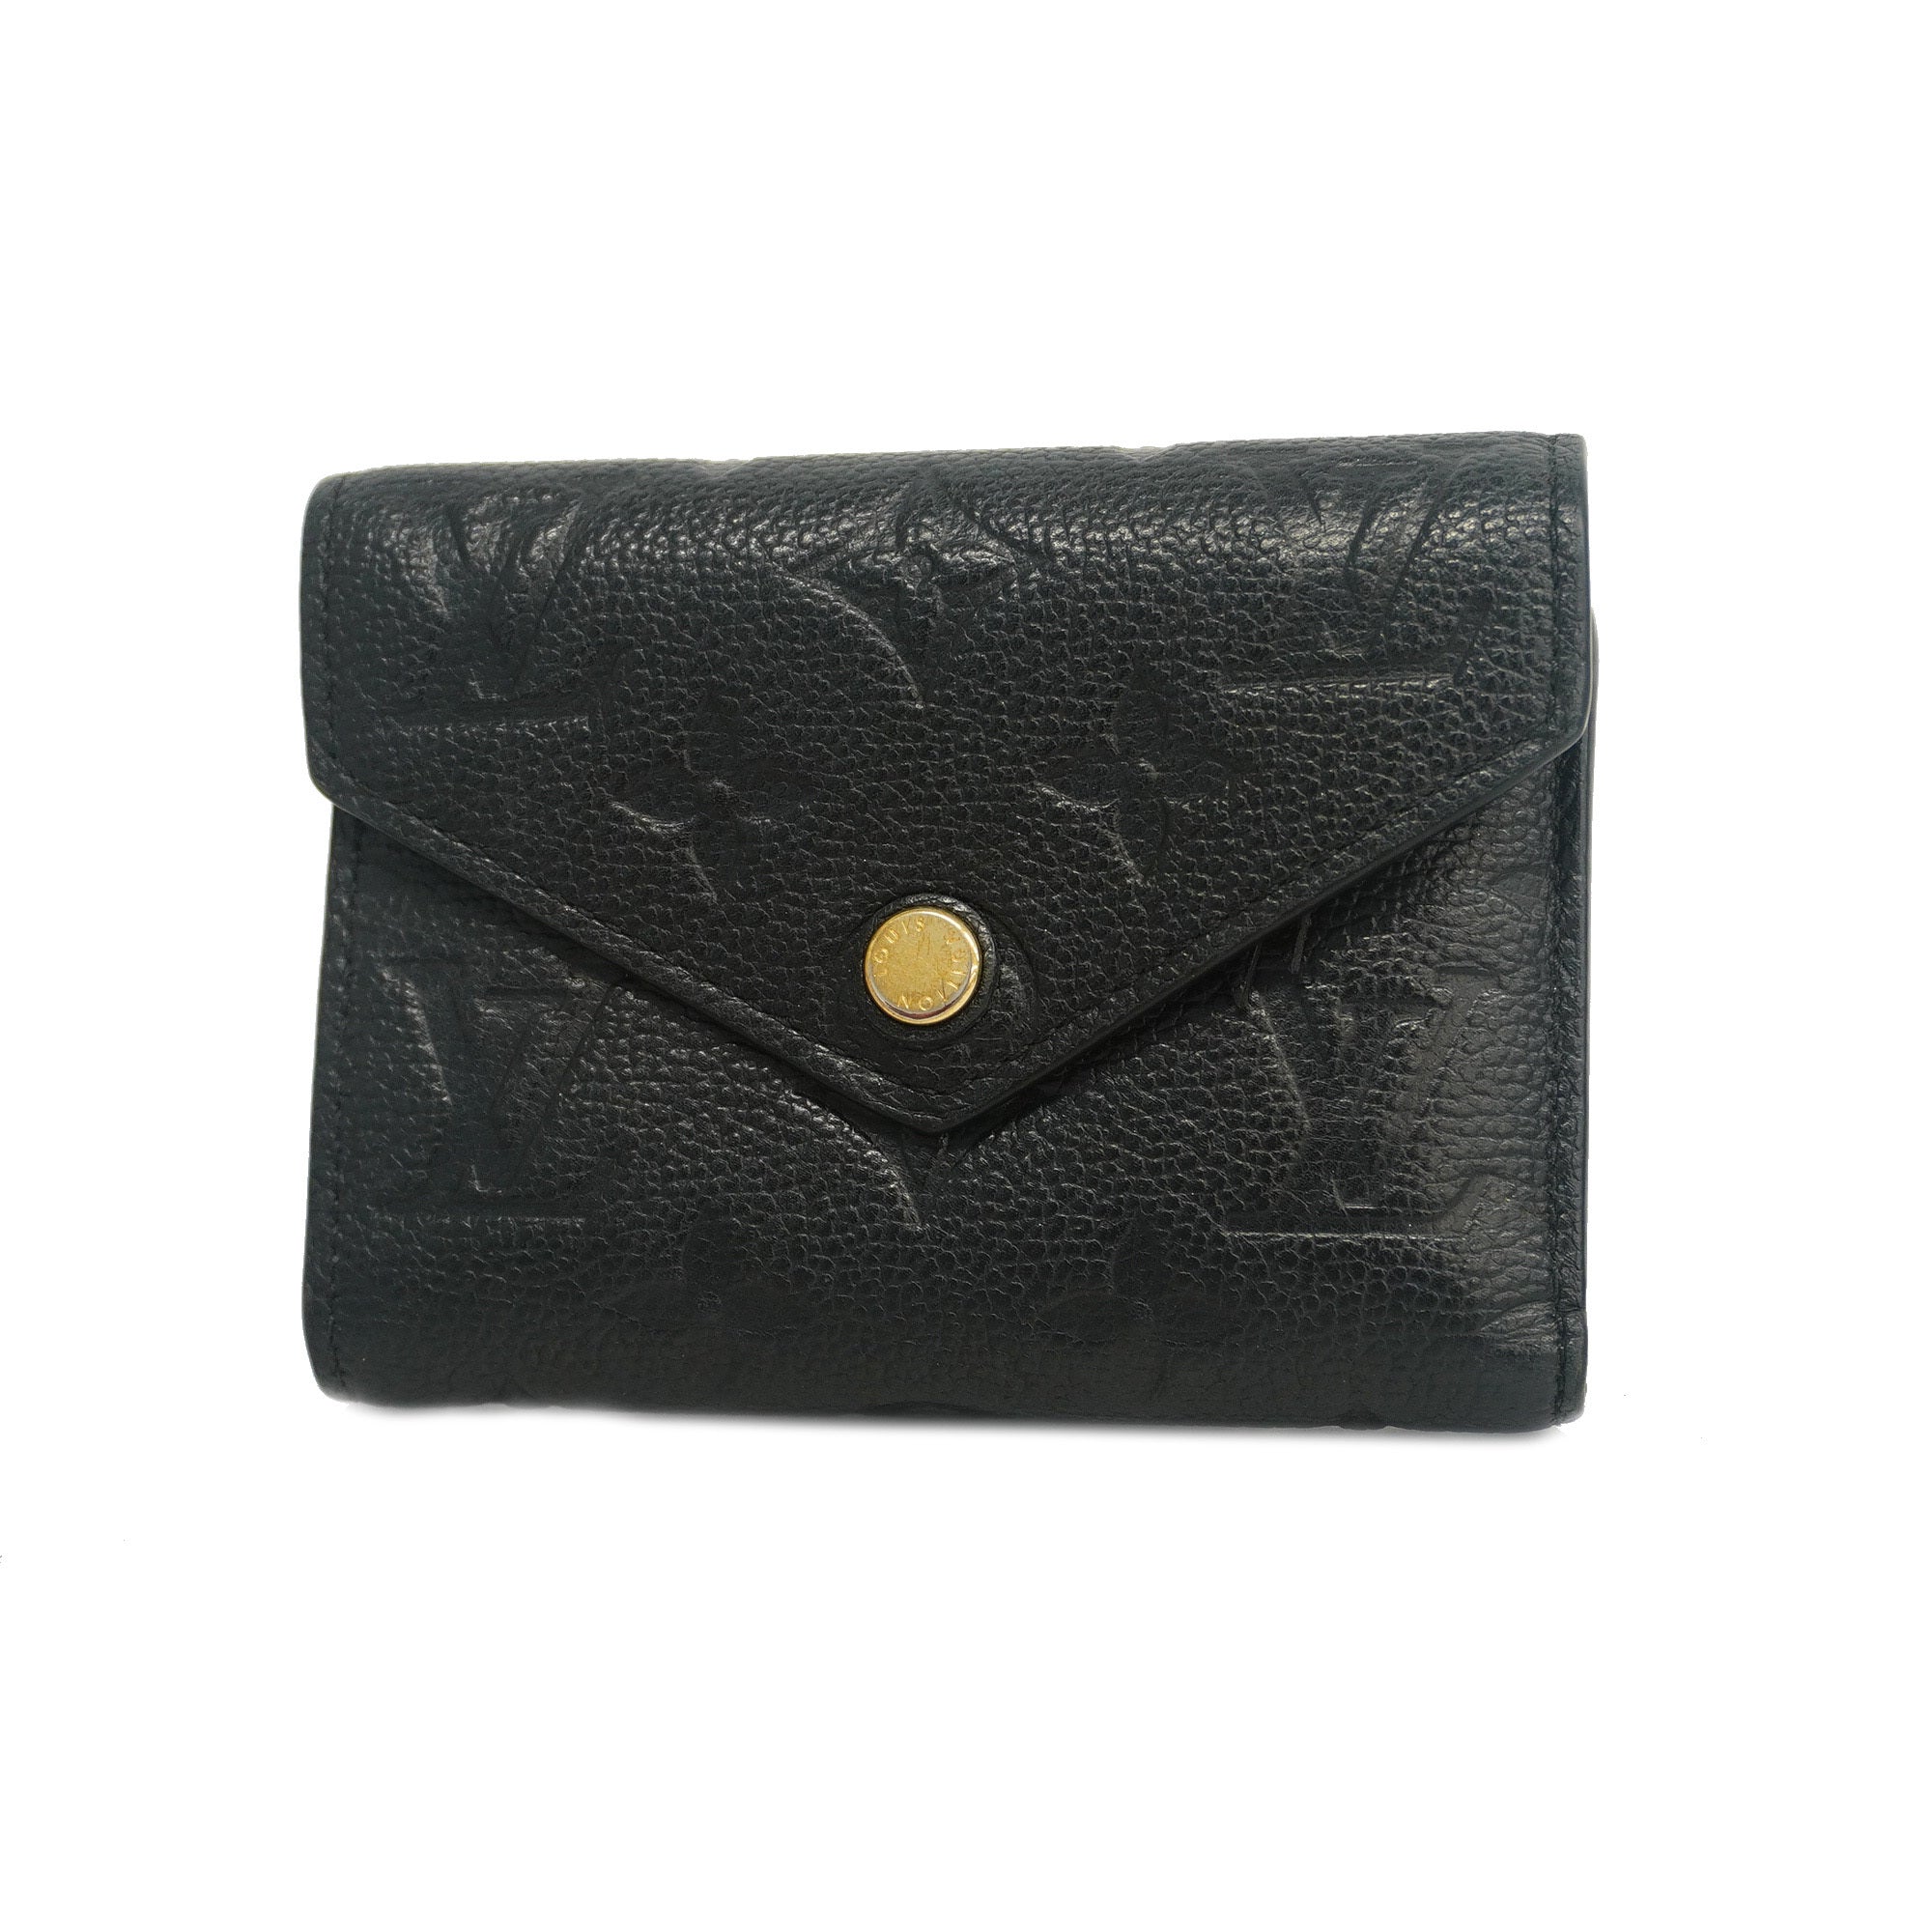 Louis Vuitton Victorine Wallet Black in Monogram Empreinte Leather